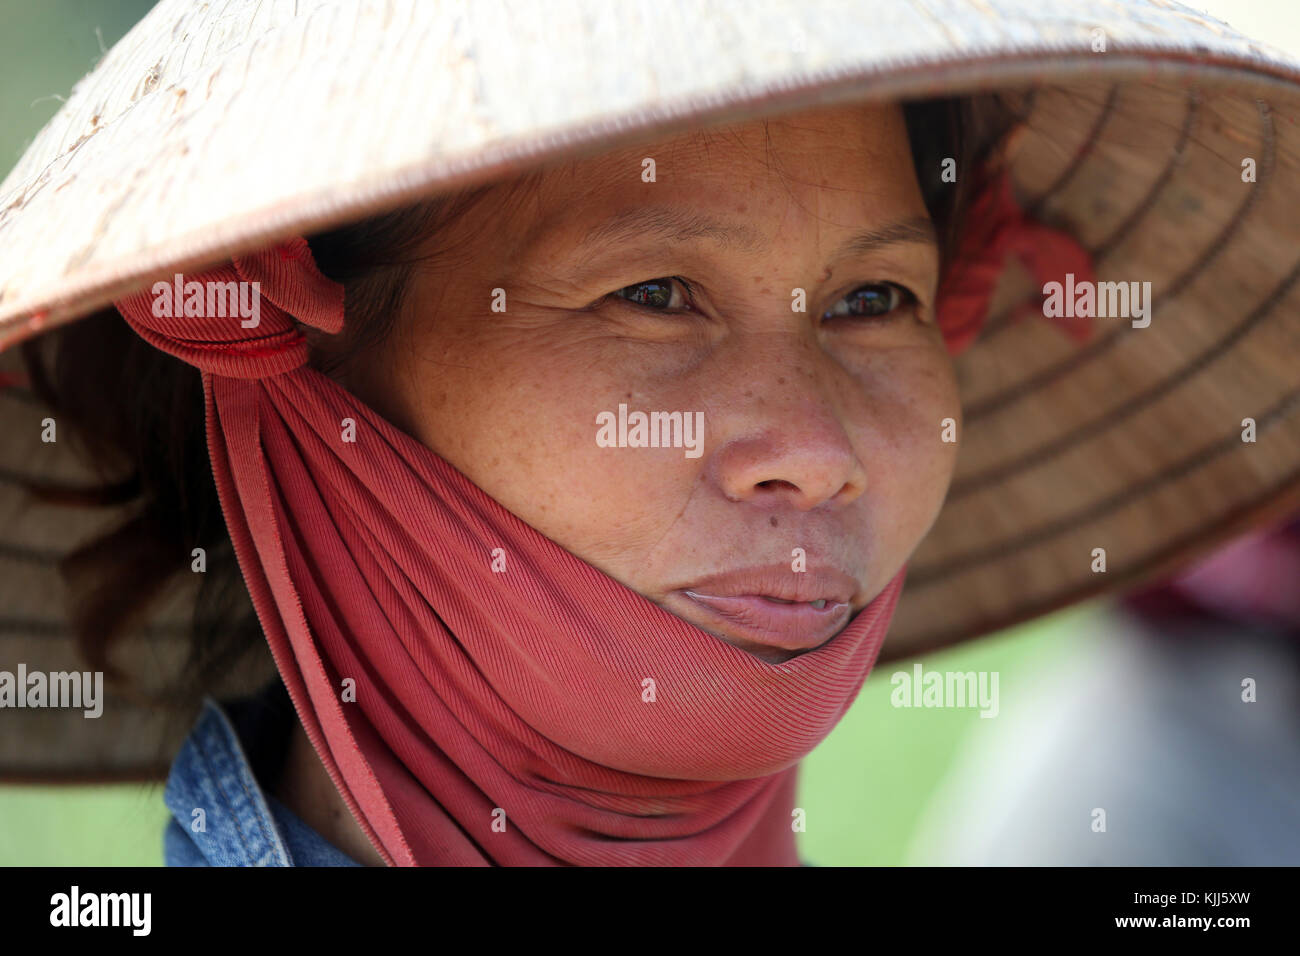 Vietnamienne portant un chapeau conique traditionnelle asiatique. Hoi An. Le Vietnam. Banque D'Images